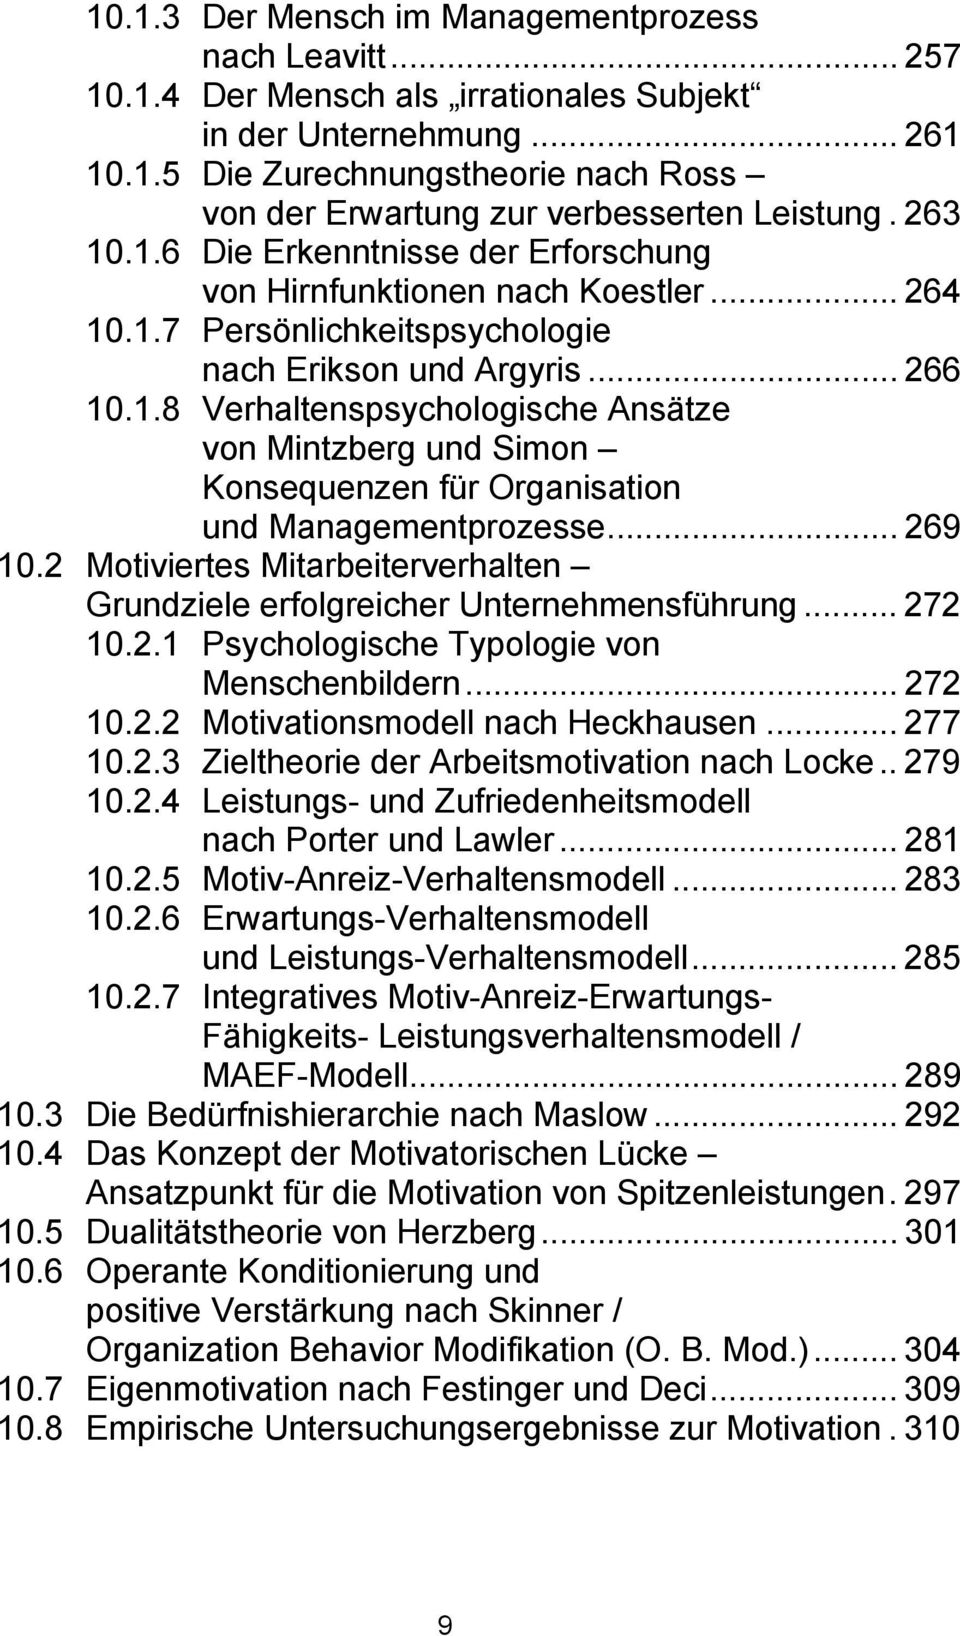 .. 269 10.2 Motiviertes Mitarbeiterverhalten Grundziele erfolgreicher Unternehmensführung... 272 10.2.1 Psychologische Typologie von Menschenbildern... 272 10.2.2 Motivationsmodell nach Heckhausen.